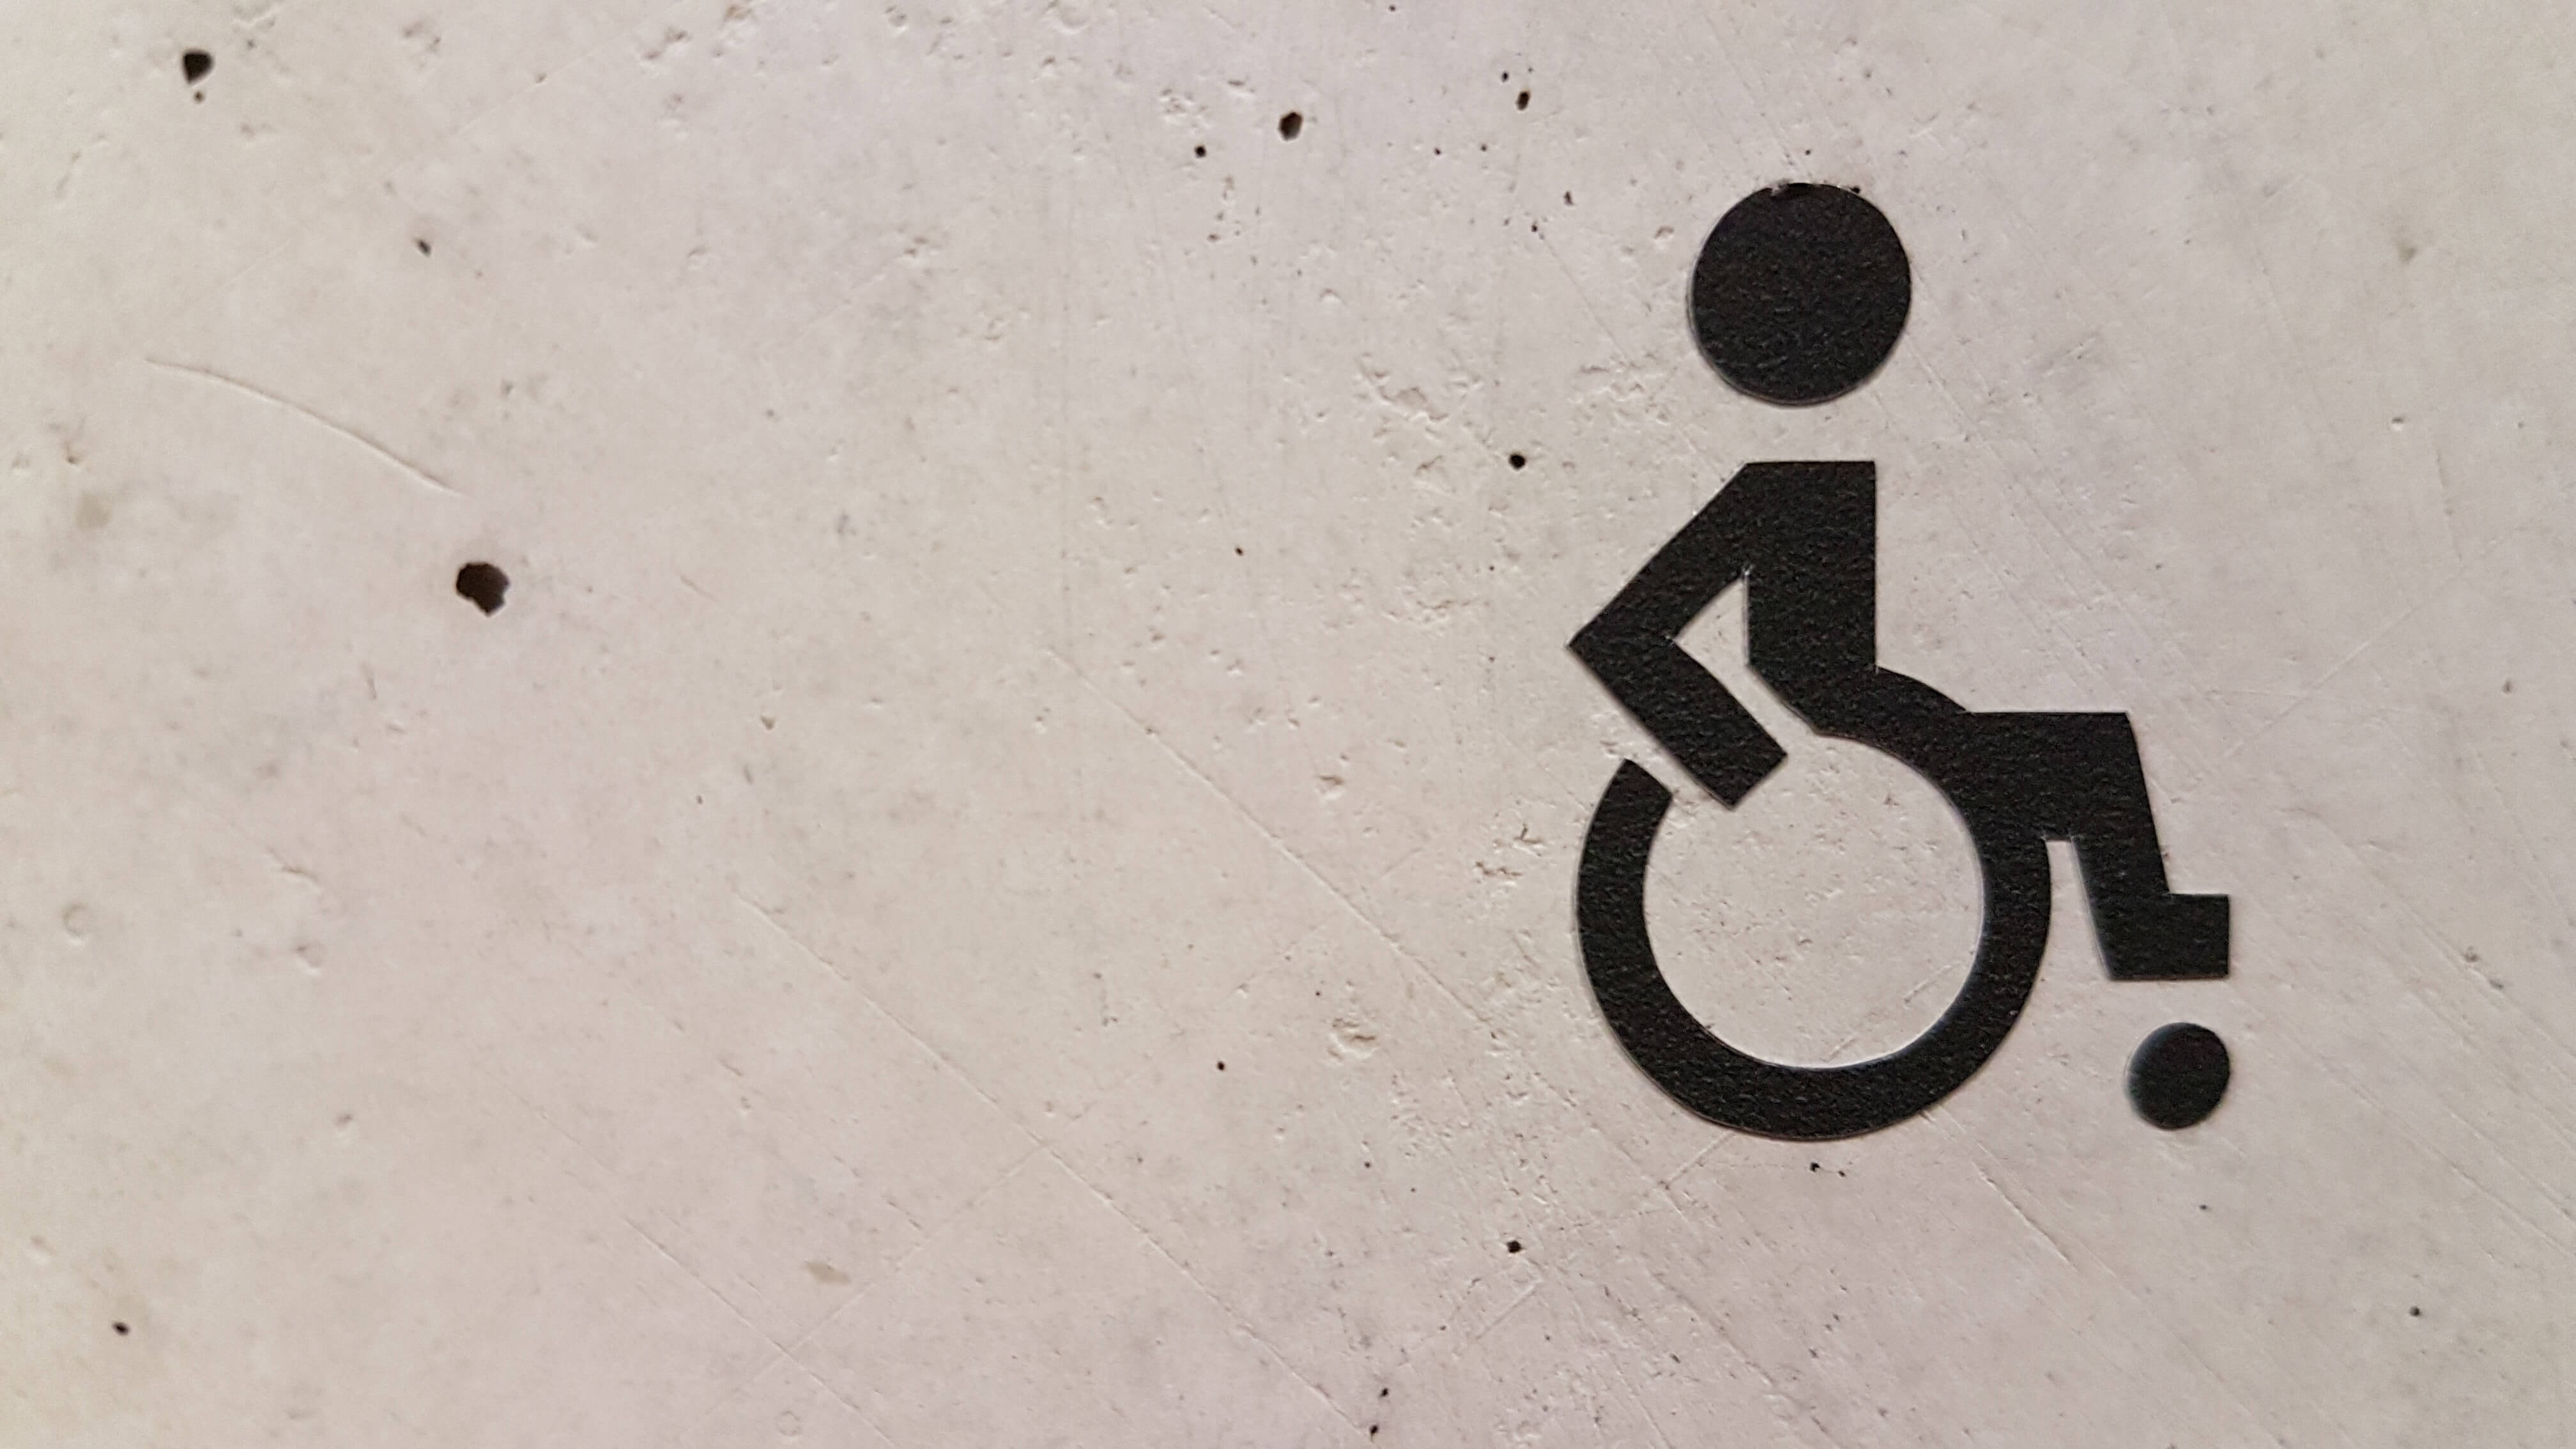 Rampe d'accès pour personne en fauteuil roulant : conseils et informations